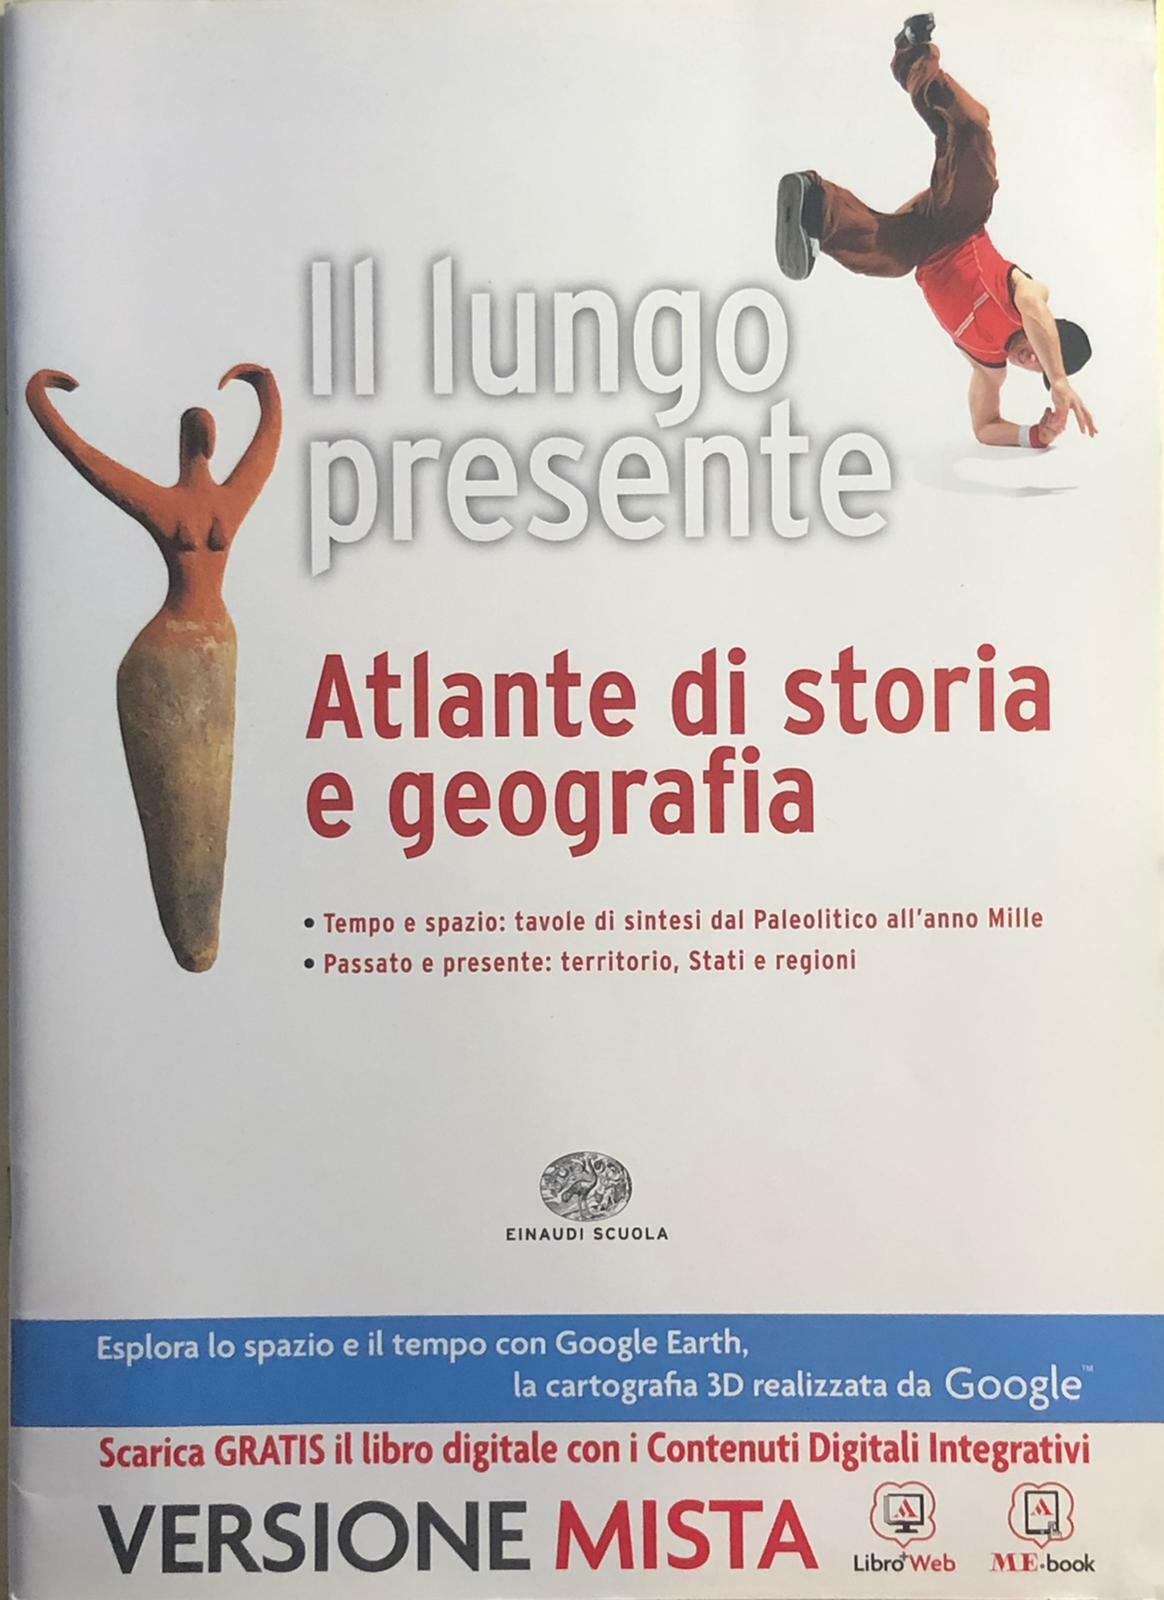 Il lungo presente, Atlante di storia e geografia di Aa.vv., 2014, Einaudi Scuola